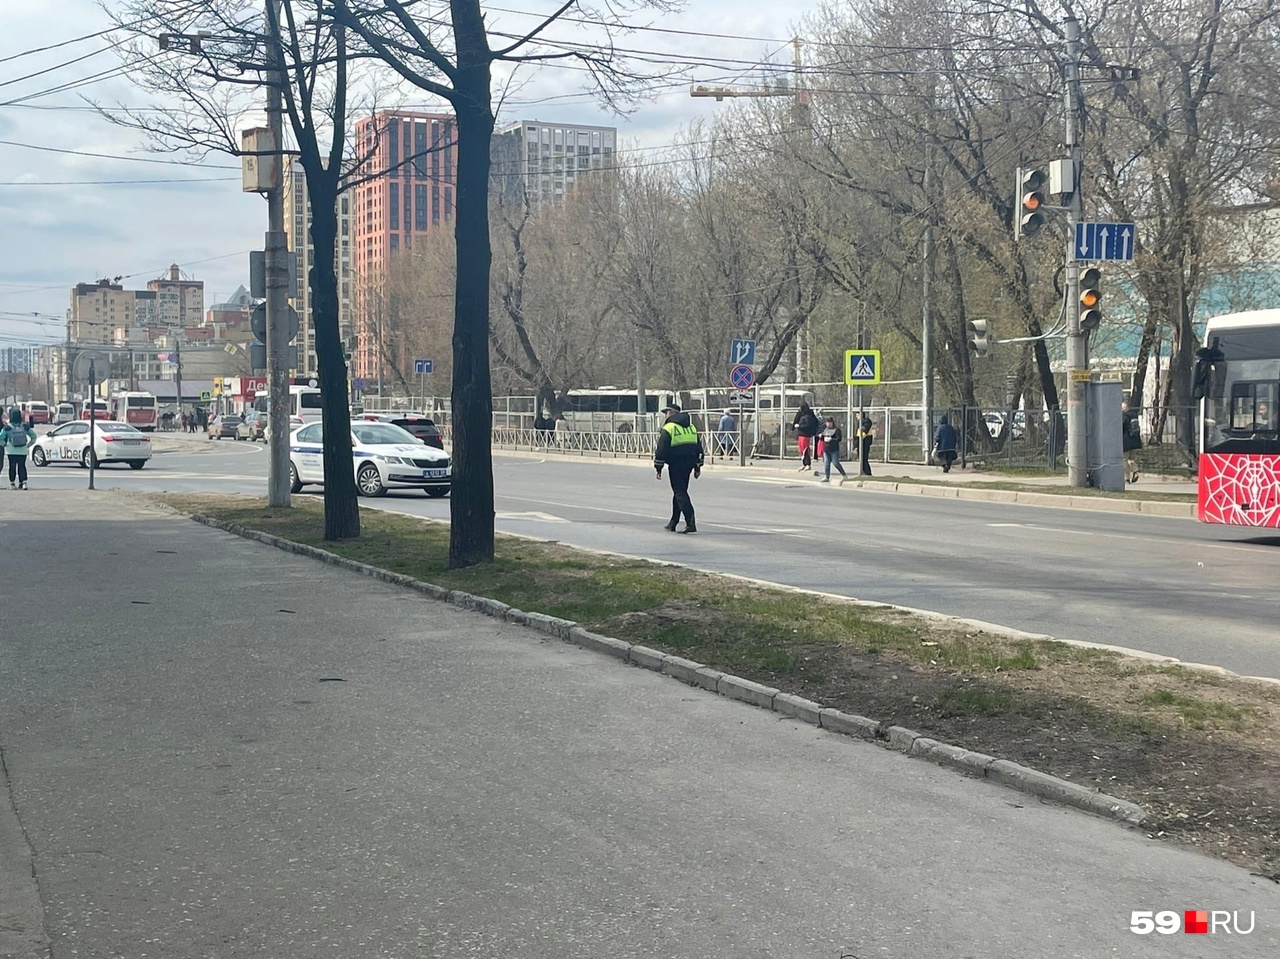 На некоторое время закрыли улицу Пушкина для проезда автобусов